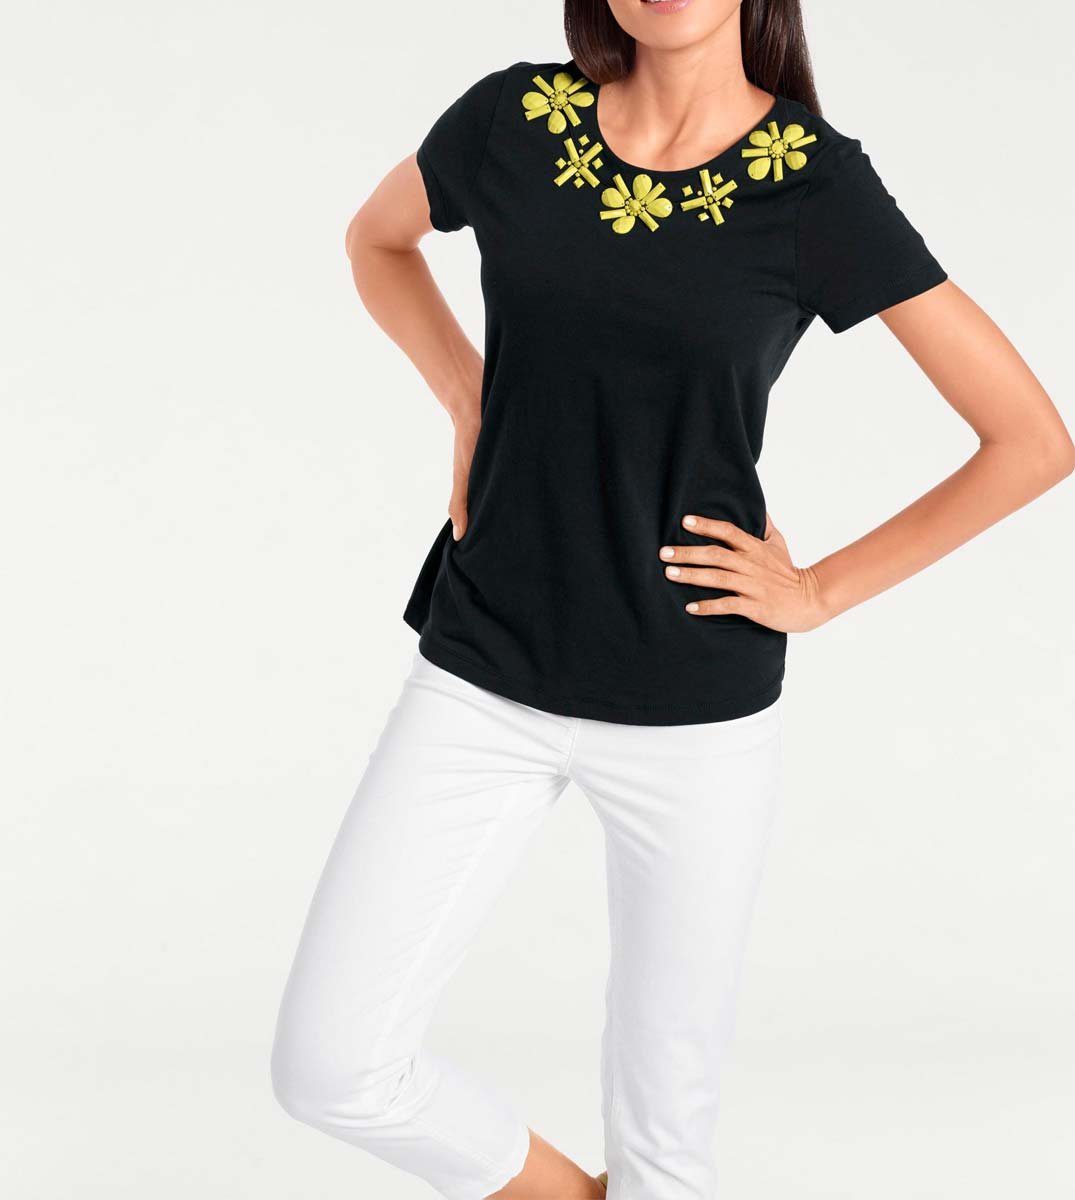 schwarz-gelb by heine Designer-Shirt, Brooke Brooke Ashley Ashley Damen Rundhalsshirt